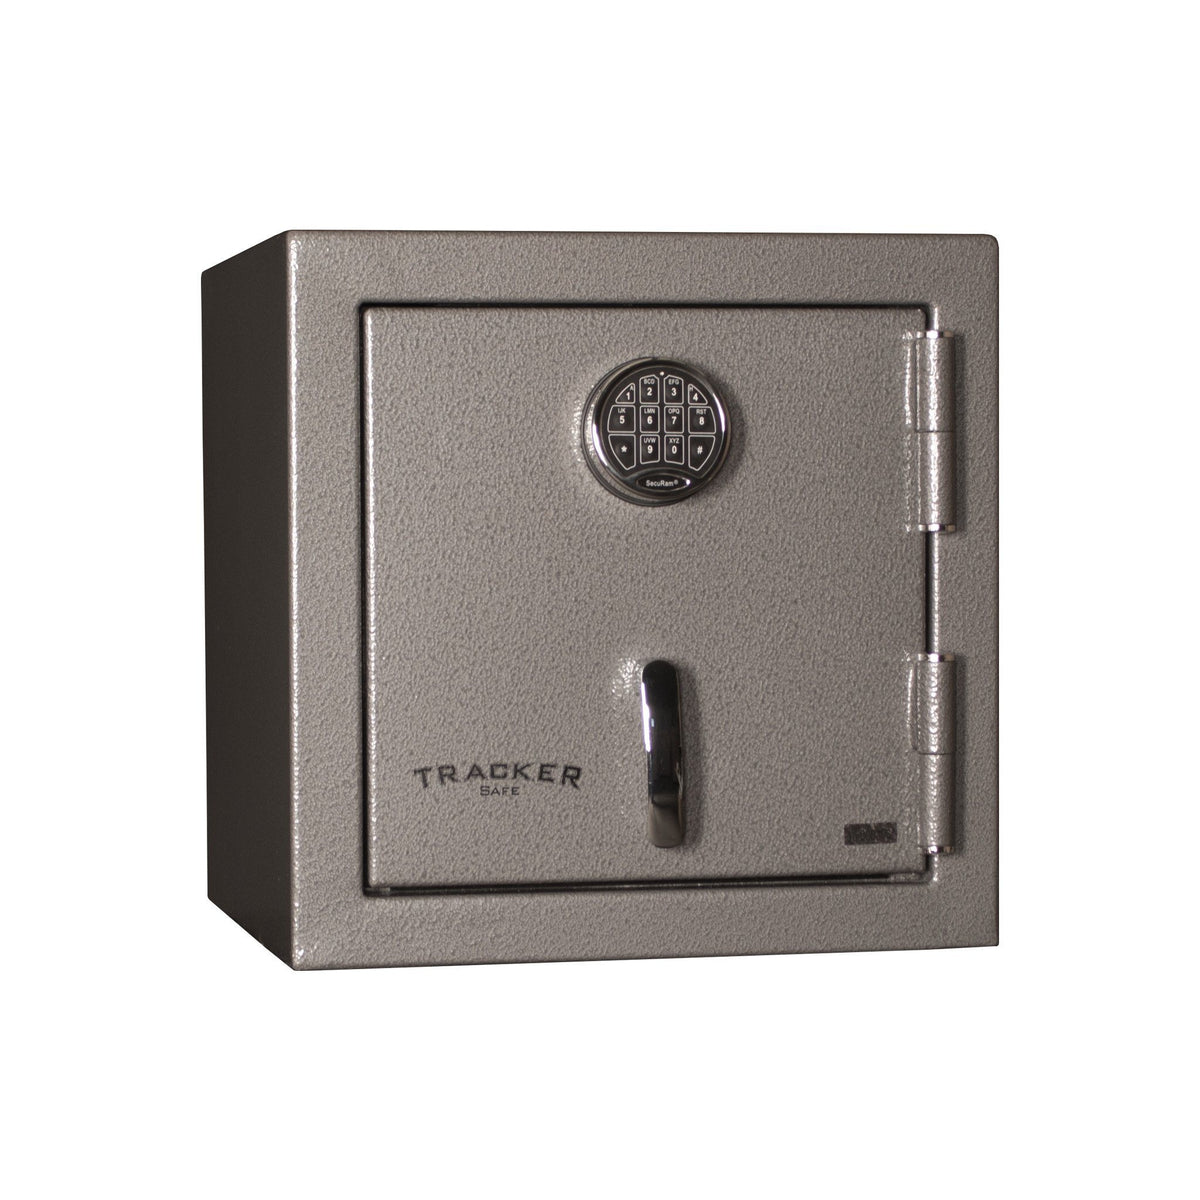 Burglar Fire Safe Products - Tracker Safe HS20 Home Security Safe